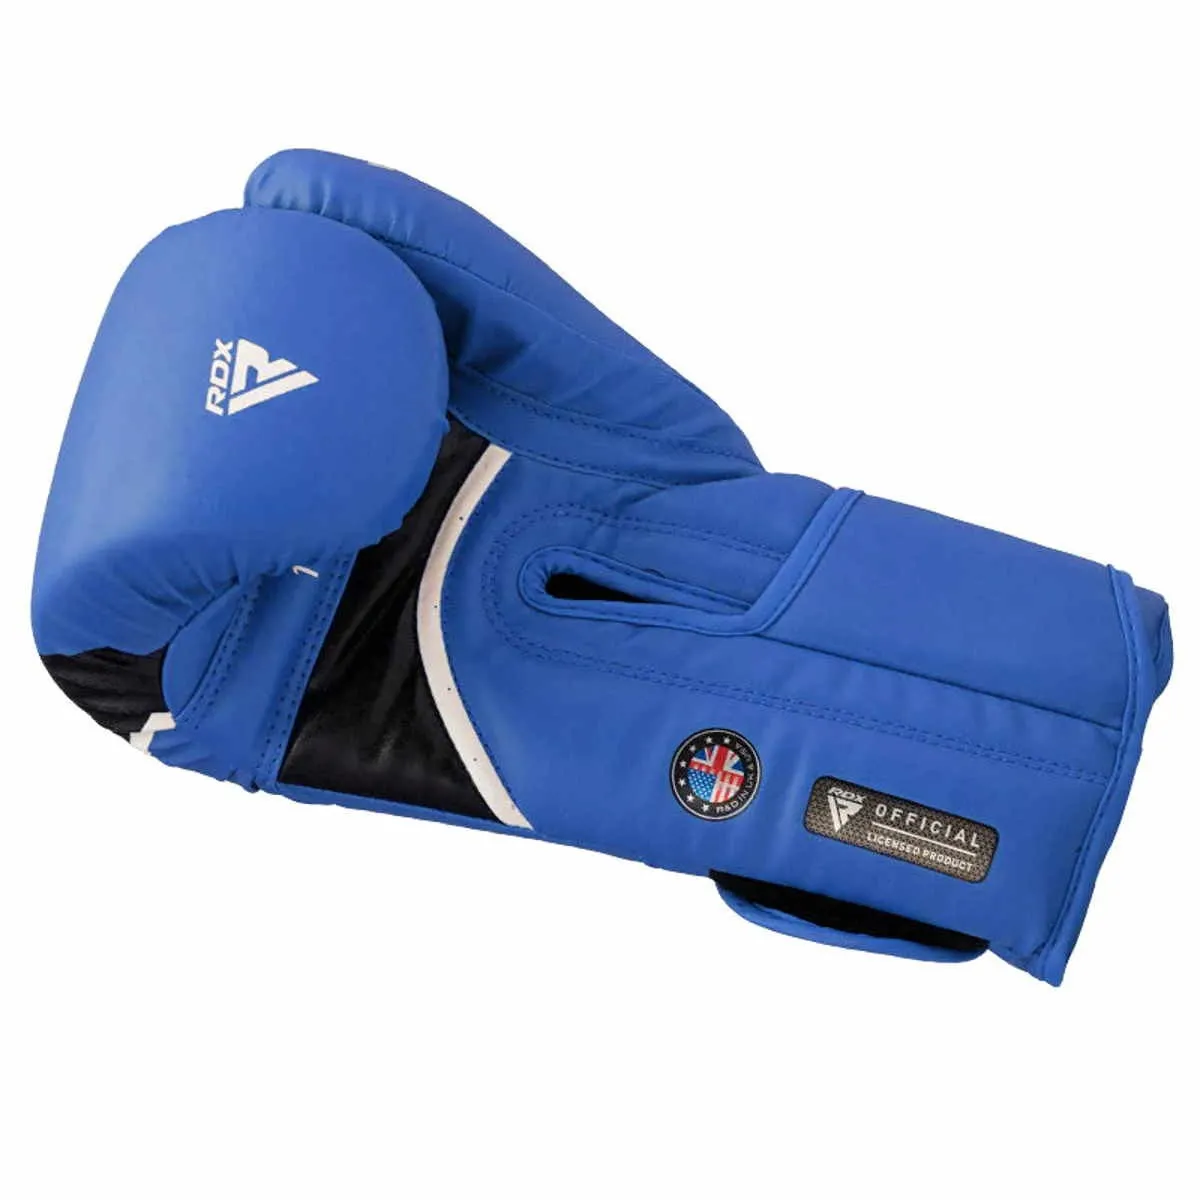 Boxing gloves RDX Aura Plus blue